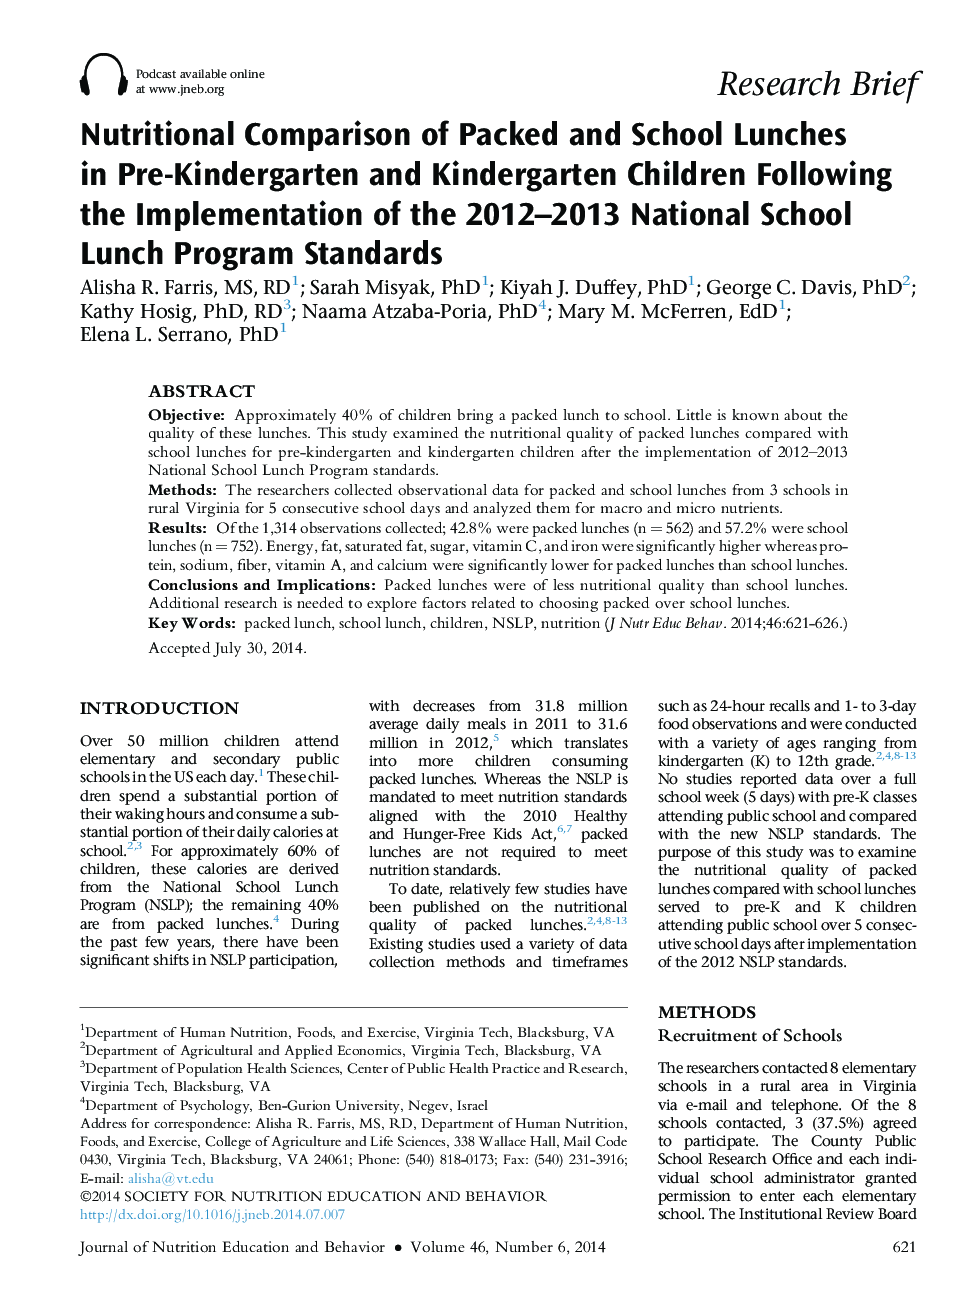 مقایسه غذایی ناهار بسته بندی شده در مدرسه در پیش از کودکستان و مهد کودک، پس از اجرای 2012-2013 استانداردهای برنامه غذایی مدرسه ملی